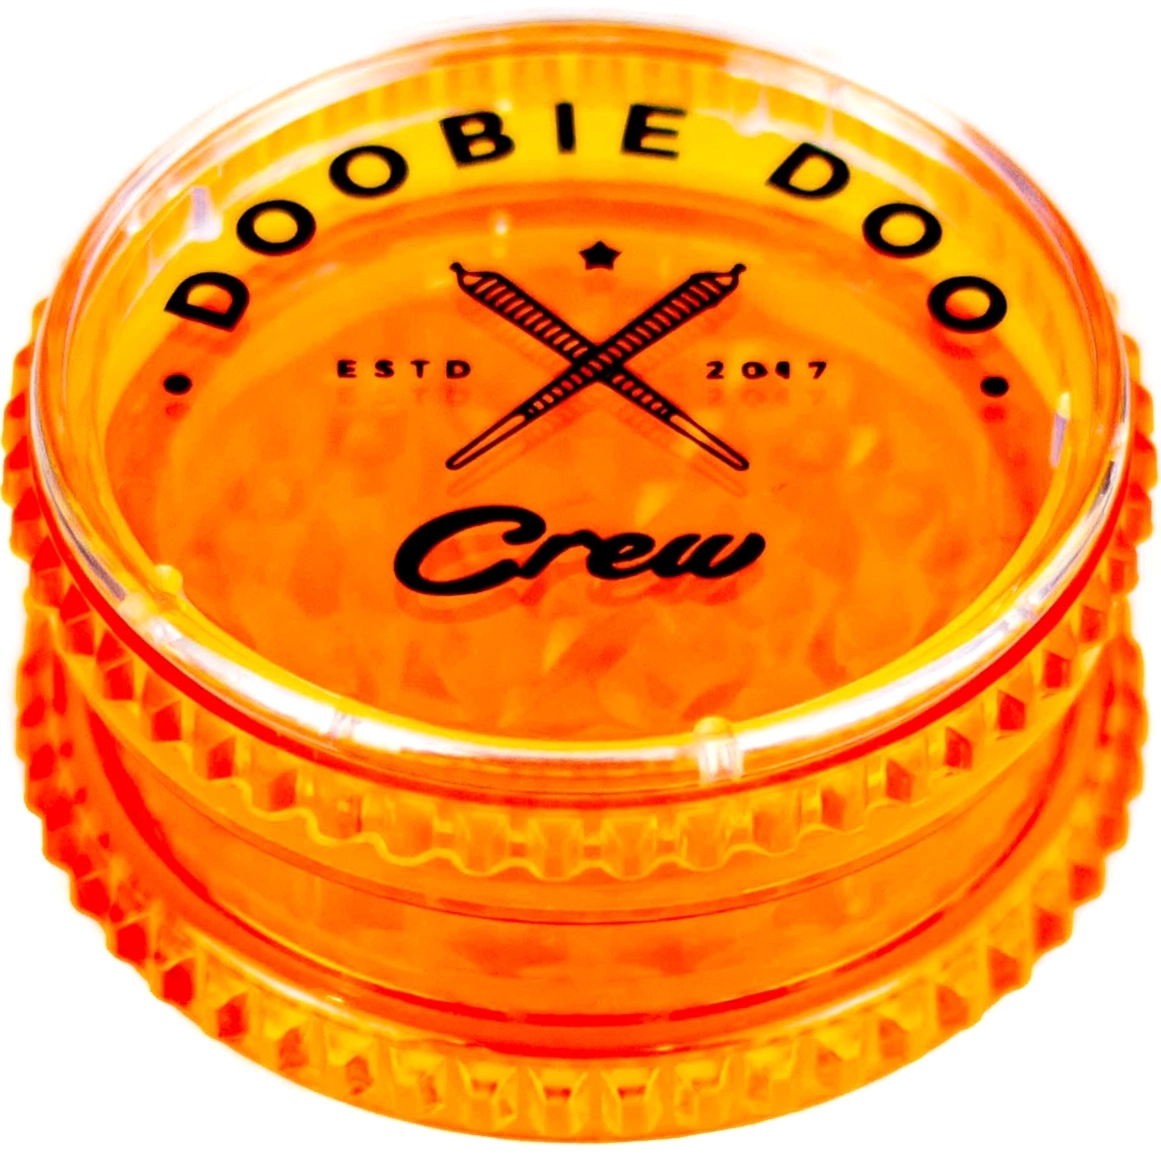 Гриндер Doobie Doo Crew "Mini" 3 составной